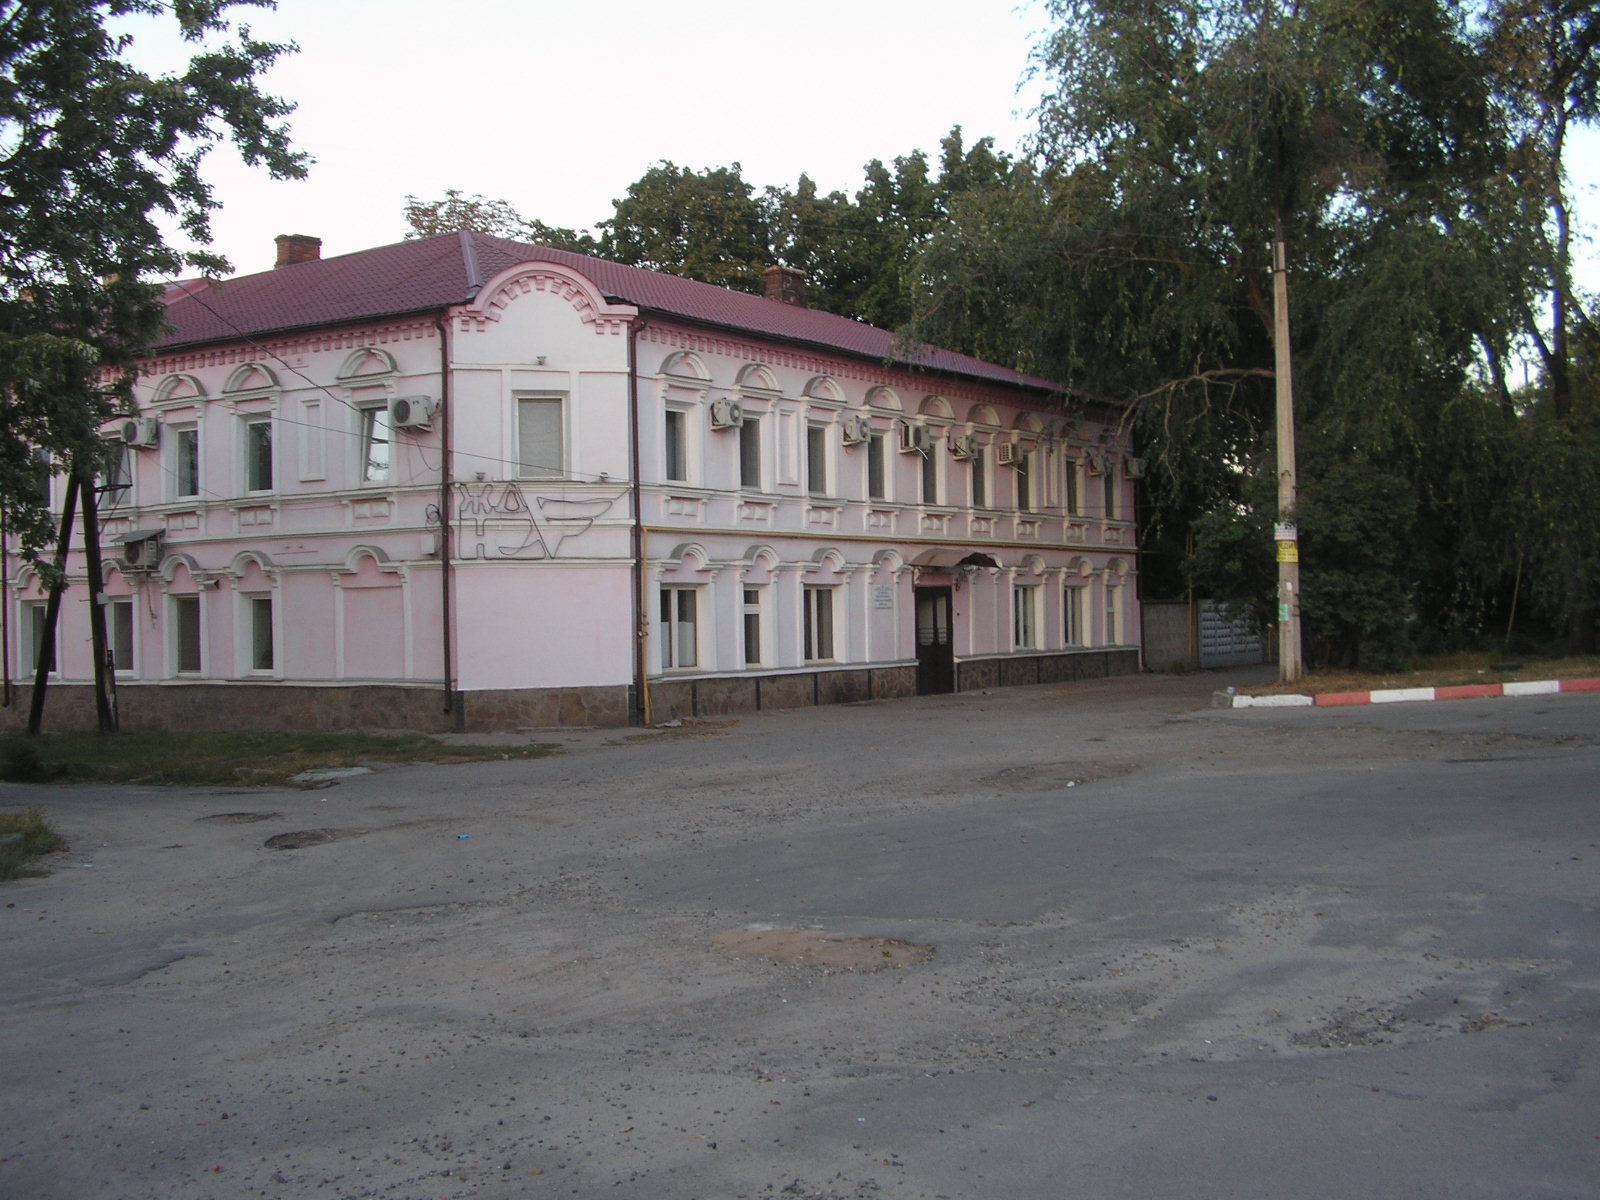 Дом отдыха локомотивных бригад депо "Октябрь". Безымянная площадь в начале улиц Сковородиновской и 1905-го года.